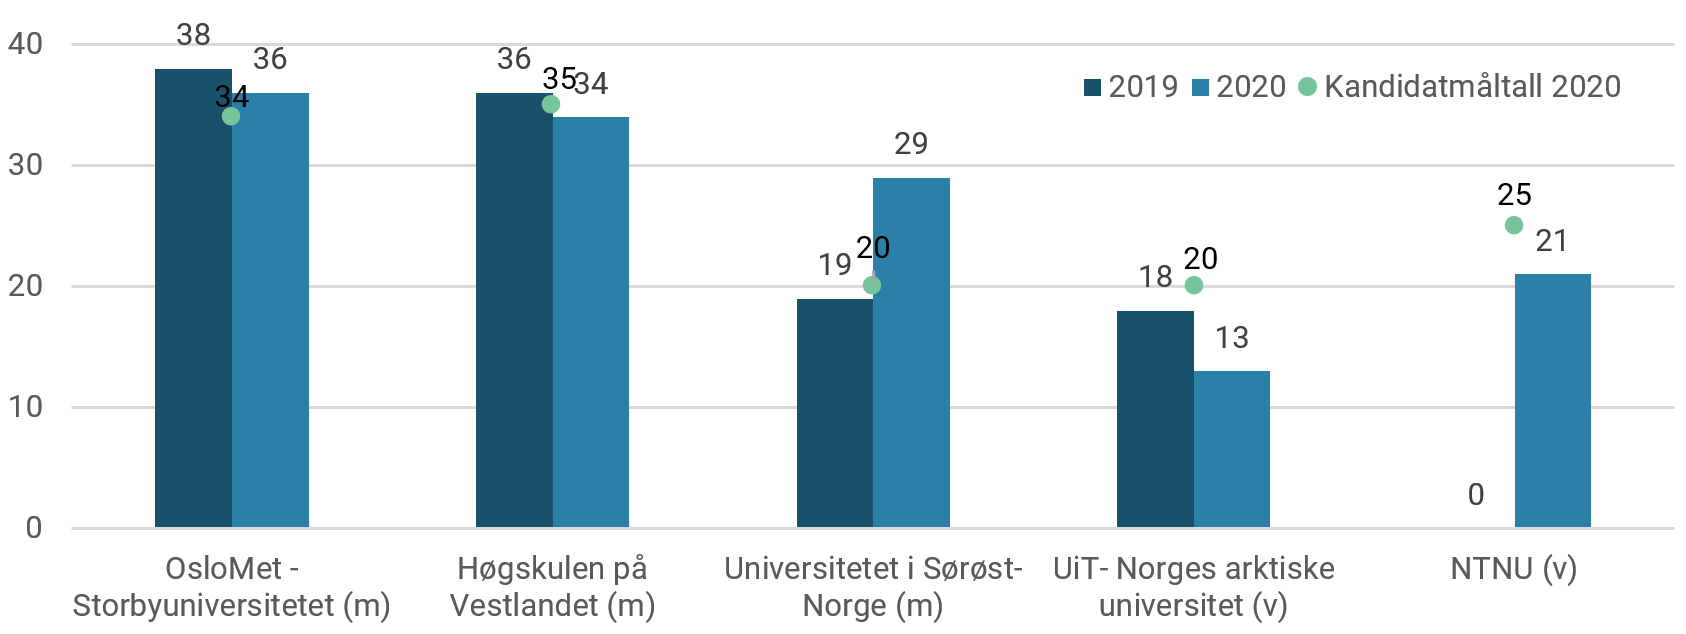 Fullførte jordmorutdanninger i 2019 og 2020, fordelt på utdanningsinstitusjon.